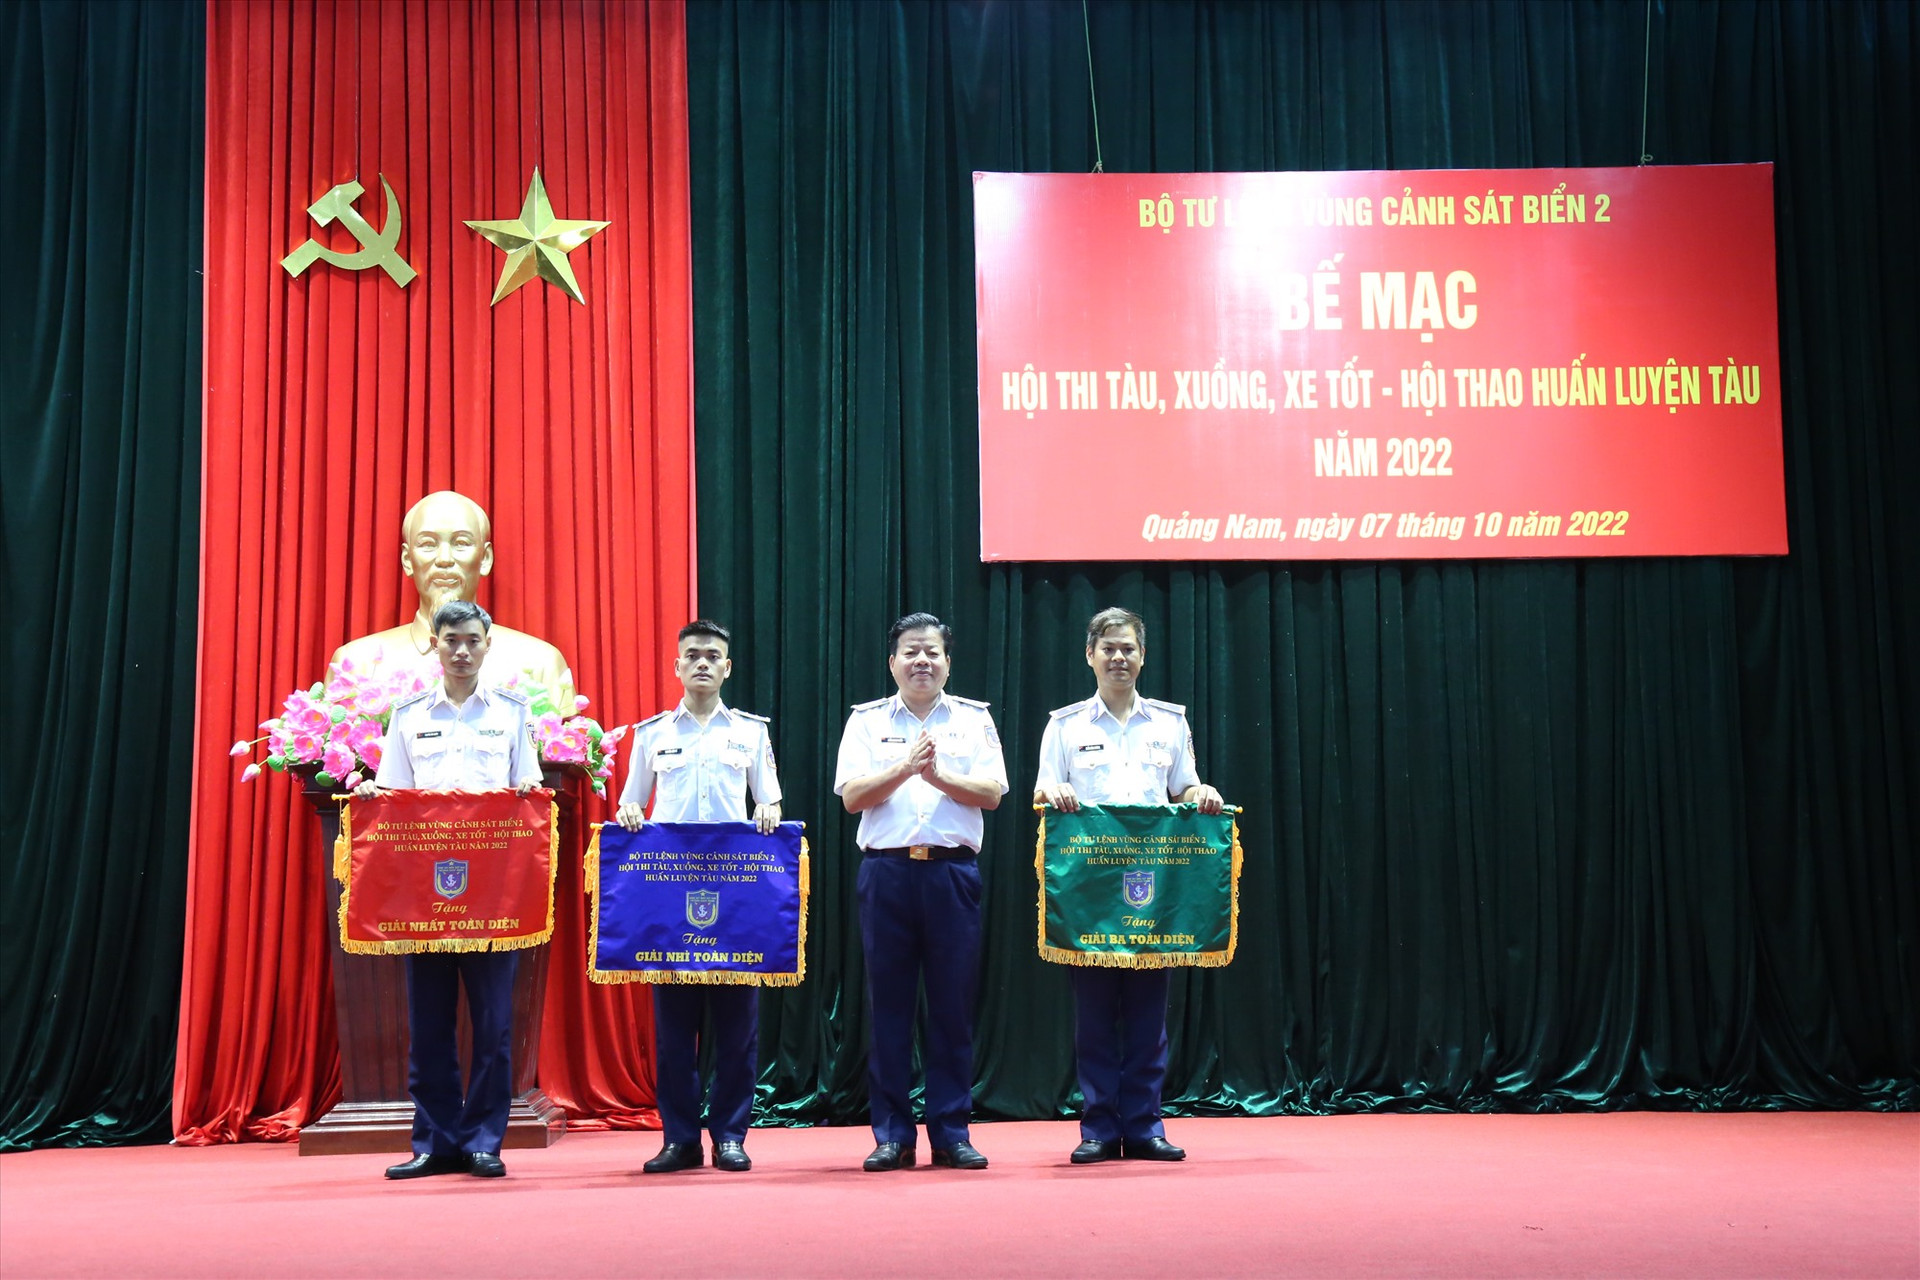 Đại tá Trần Quang Tuấn, Tư lệnh Vùng Cảnh sát biển 2 trao cờ cho các tàu đạt giải cao trong hội thi - hội thao. Ảnh: P.V